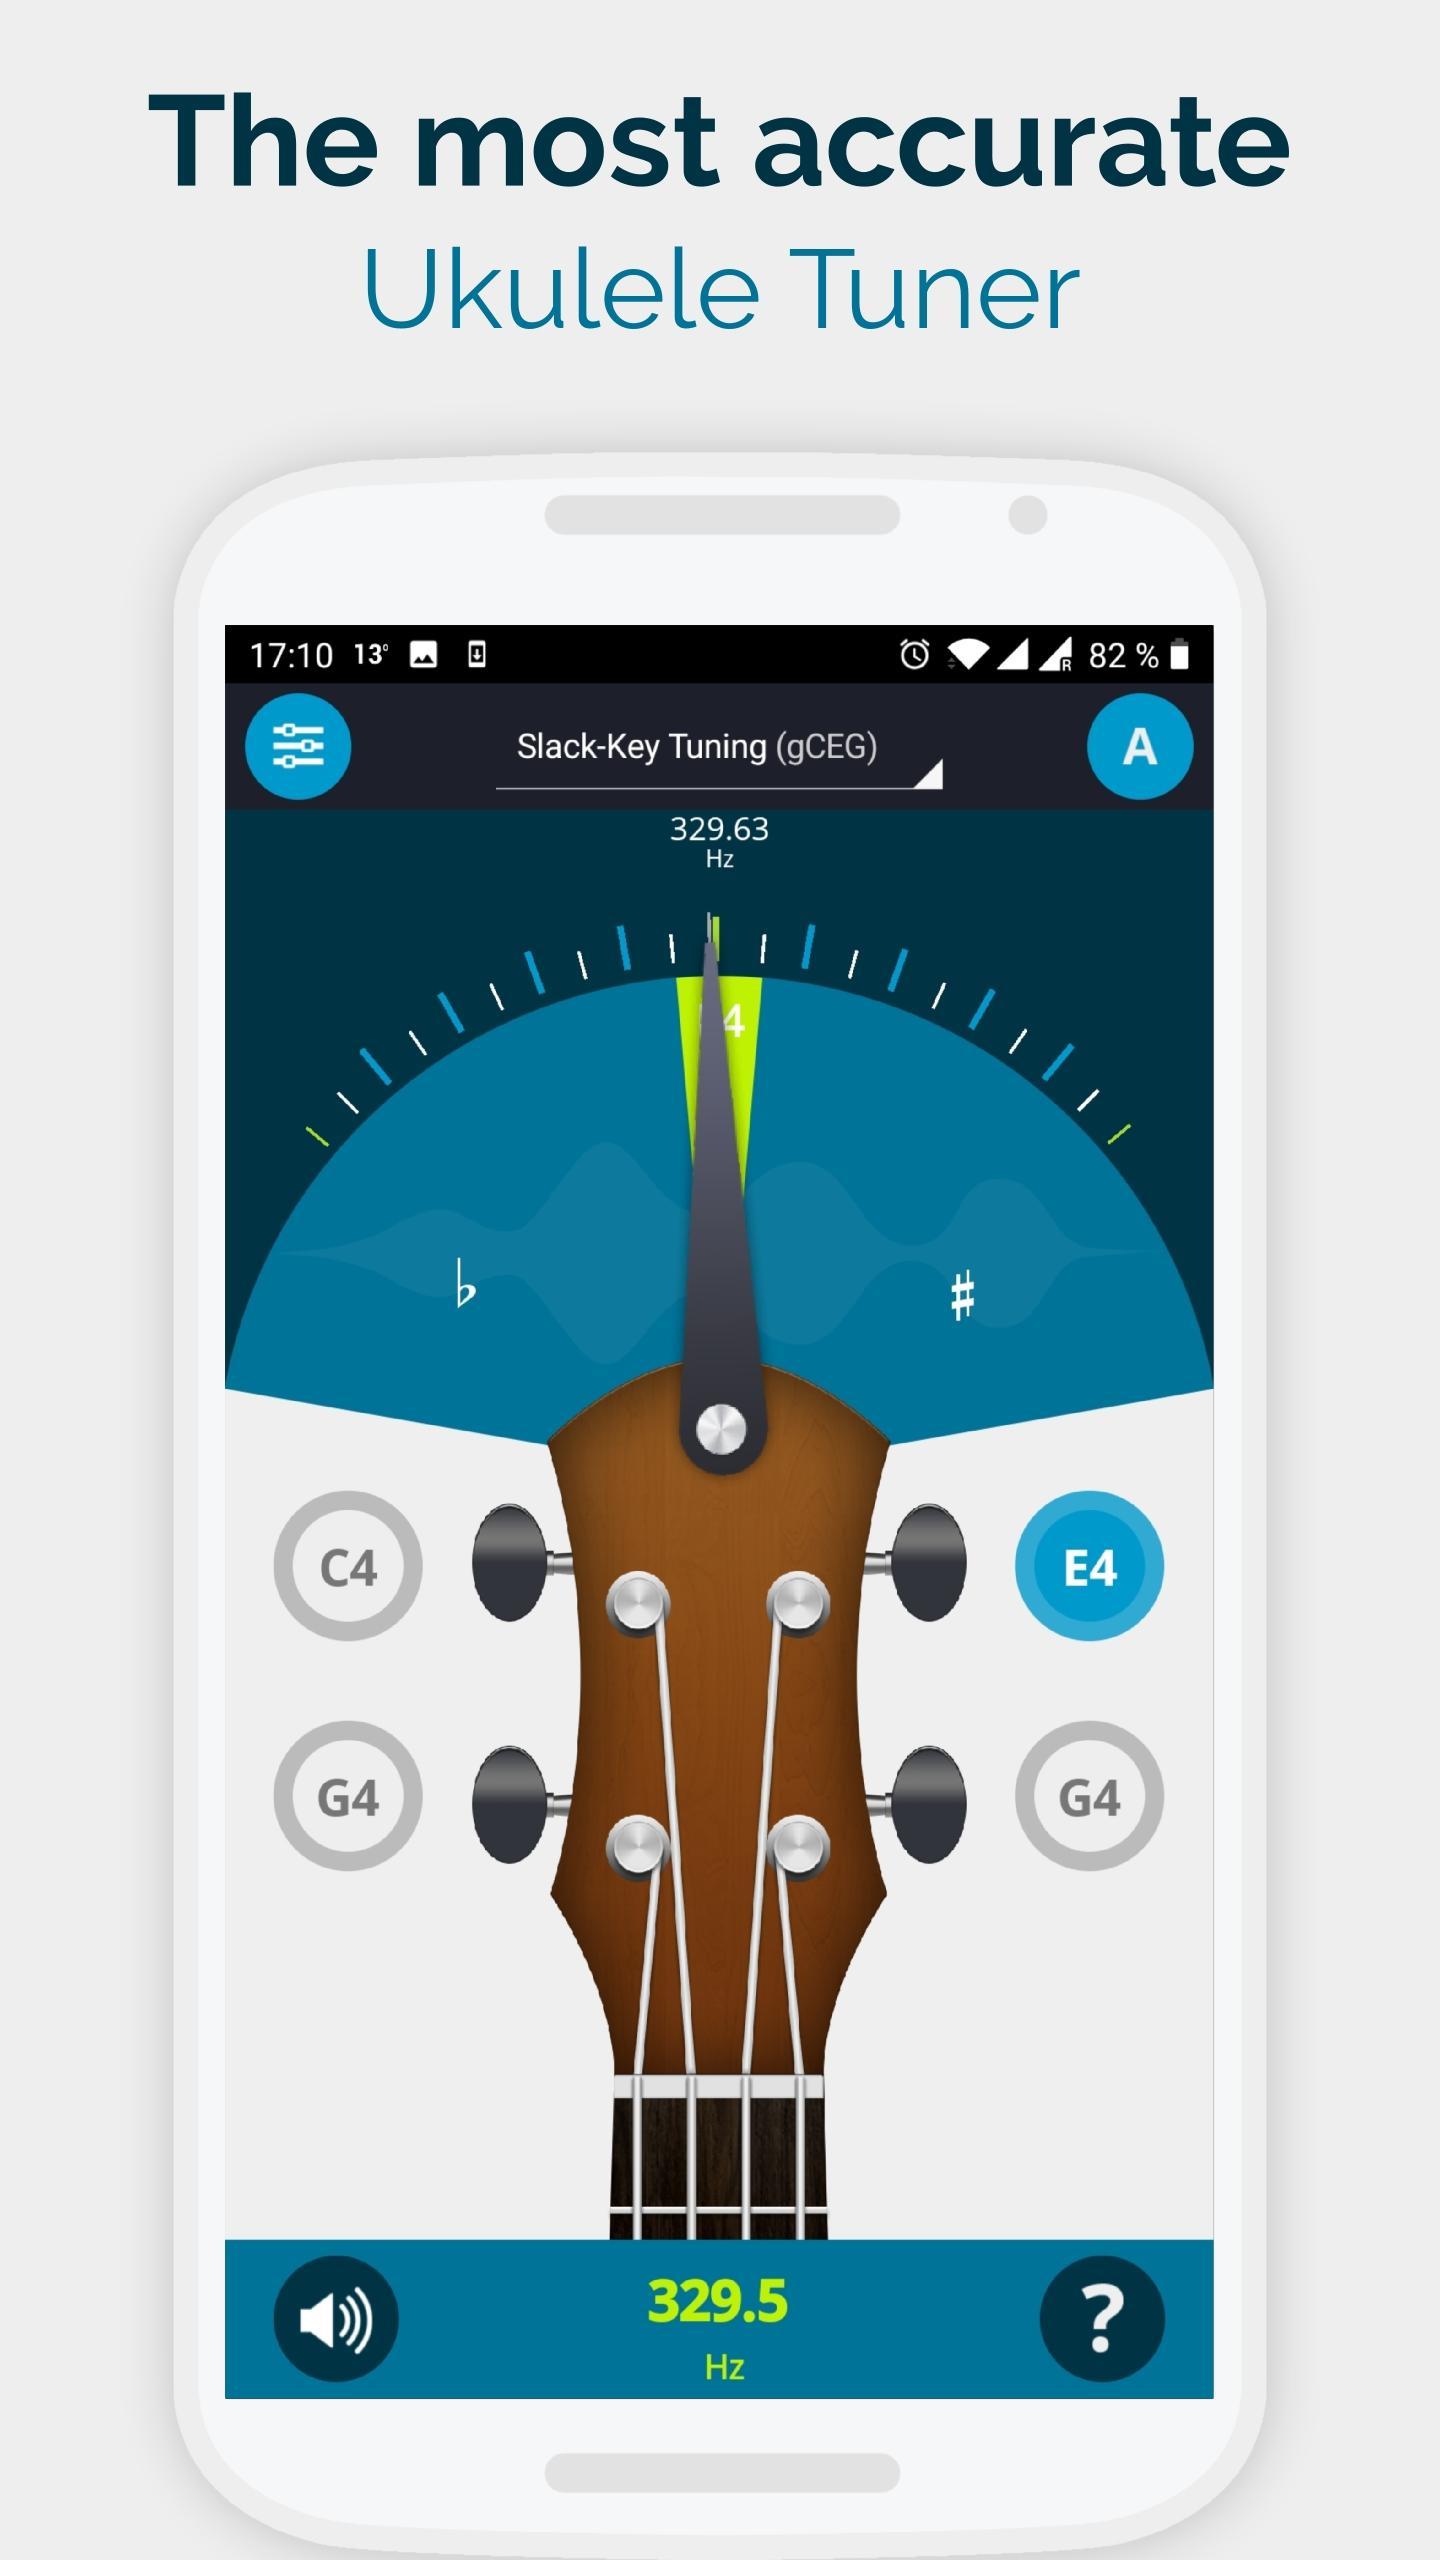 Ukulele Tuner Pocket - The Ukelele Tuner App for Android - APK Download